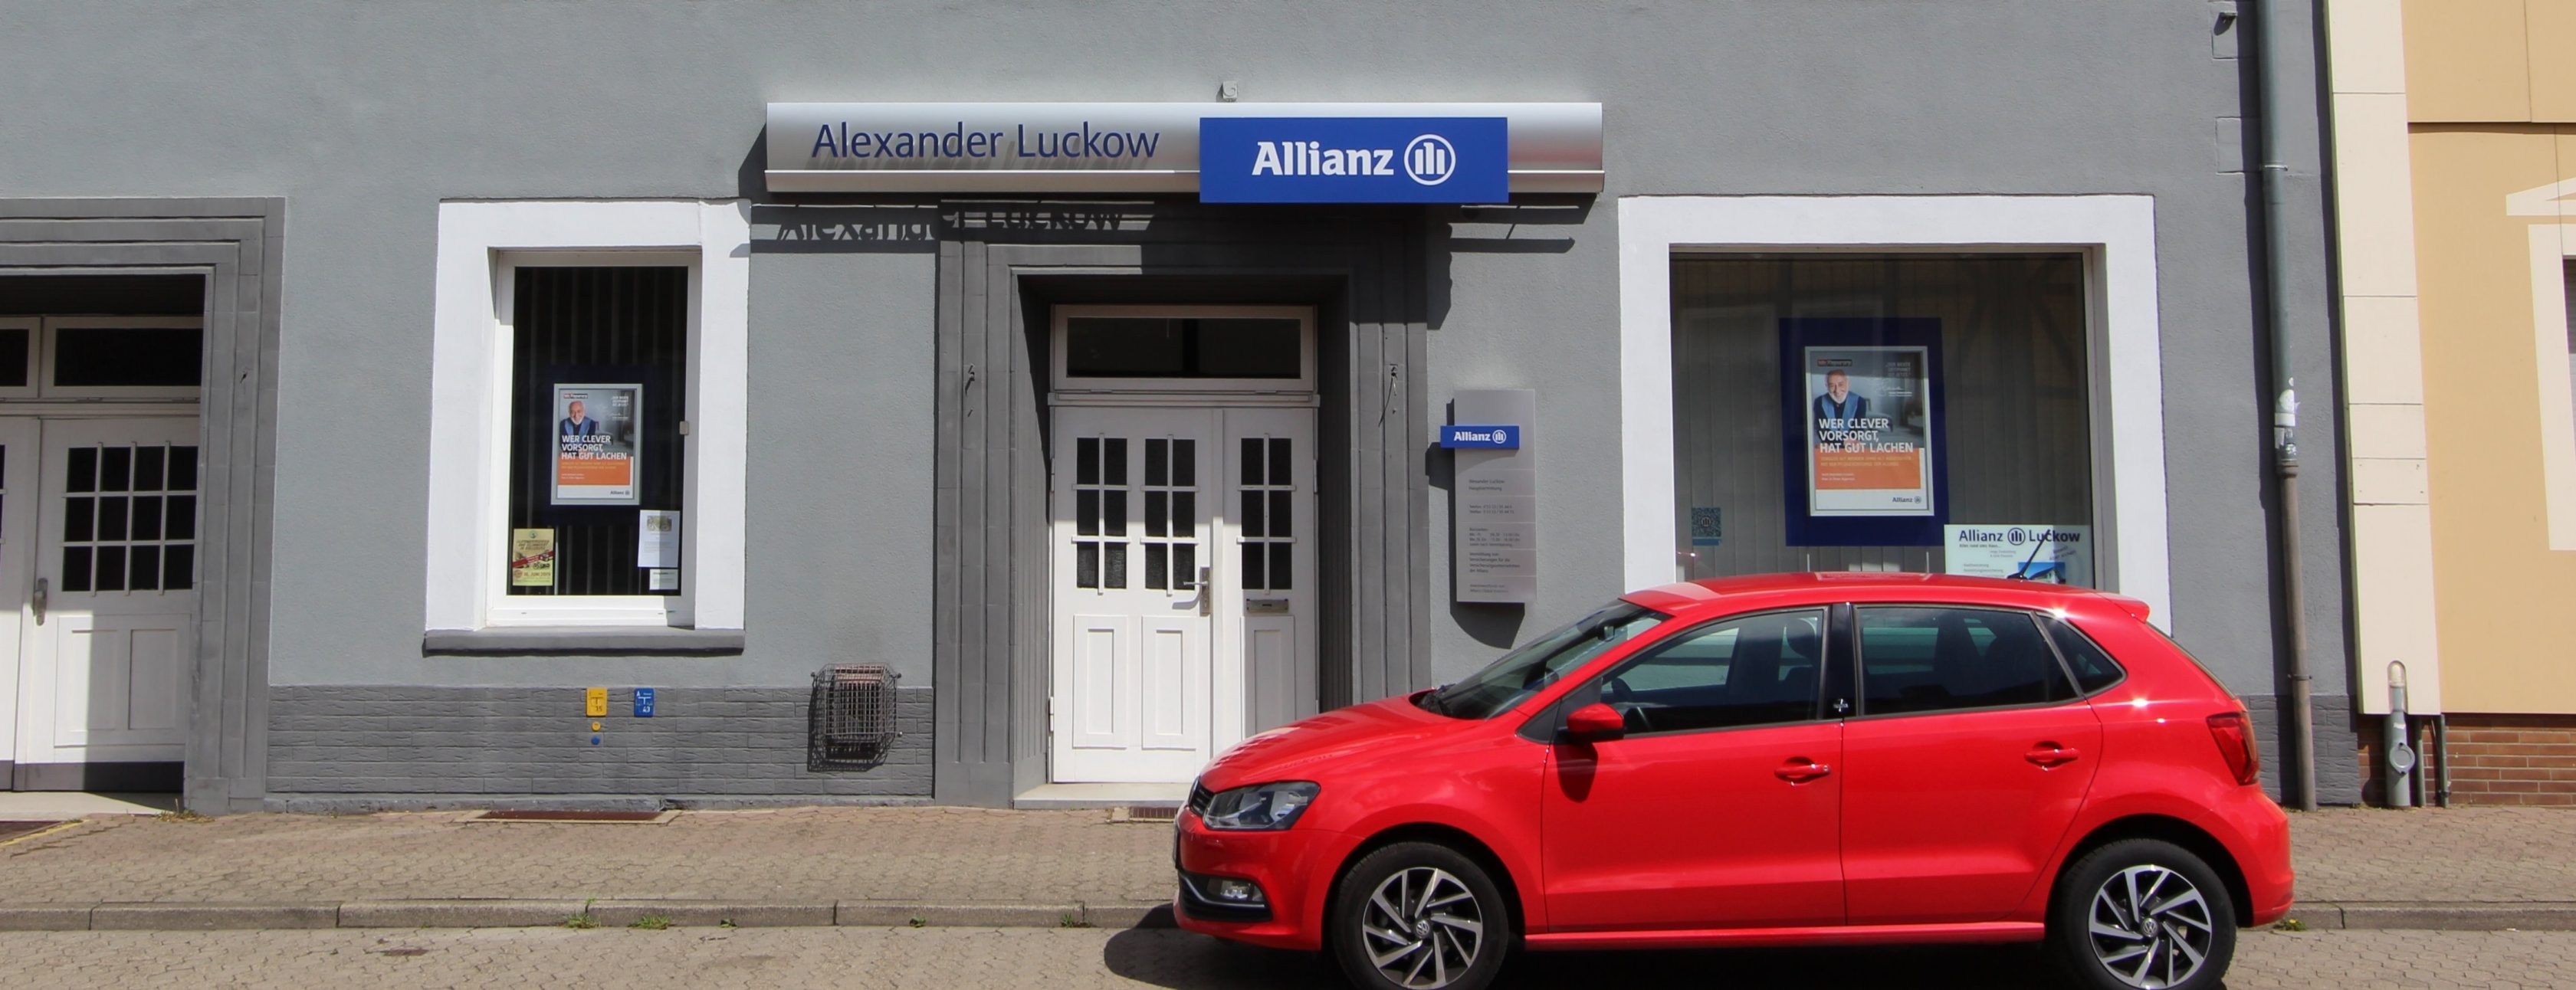 Allianz Versicherung Alexander Luckow Königslutter am Elm - Versicherungs-Guru Baufinanzierung Versicherung 